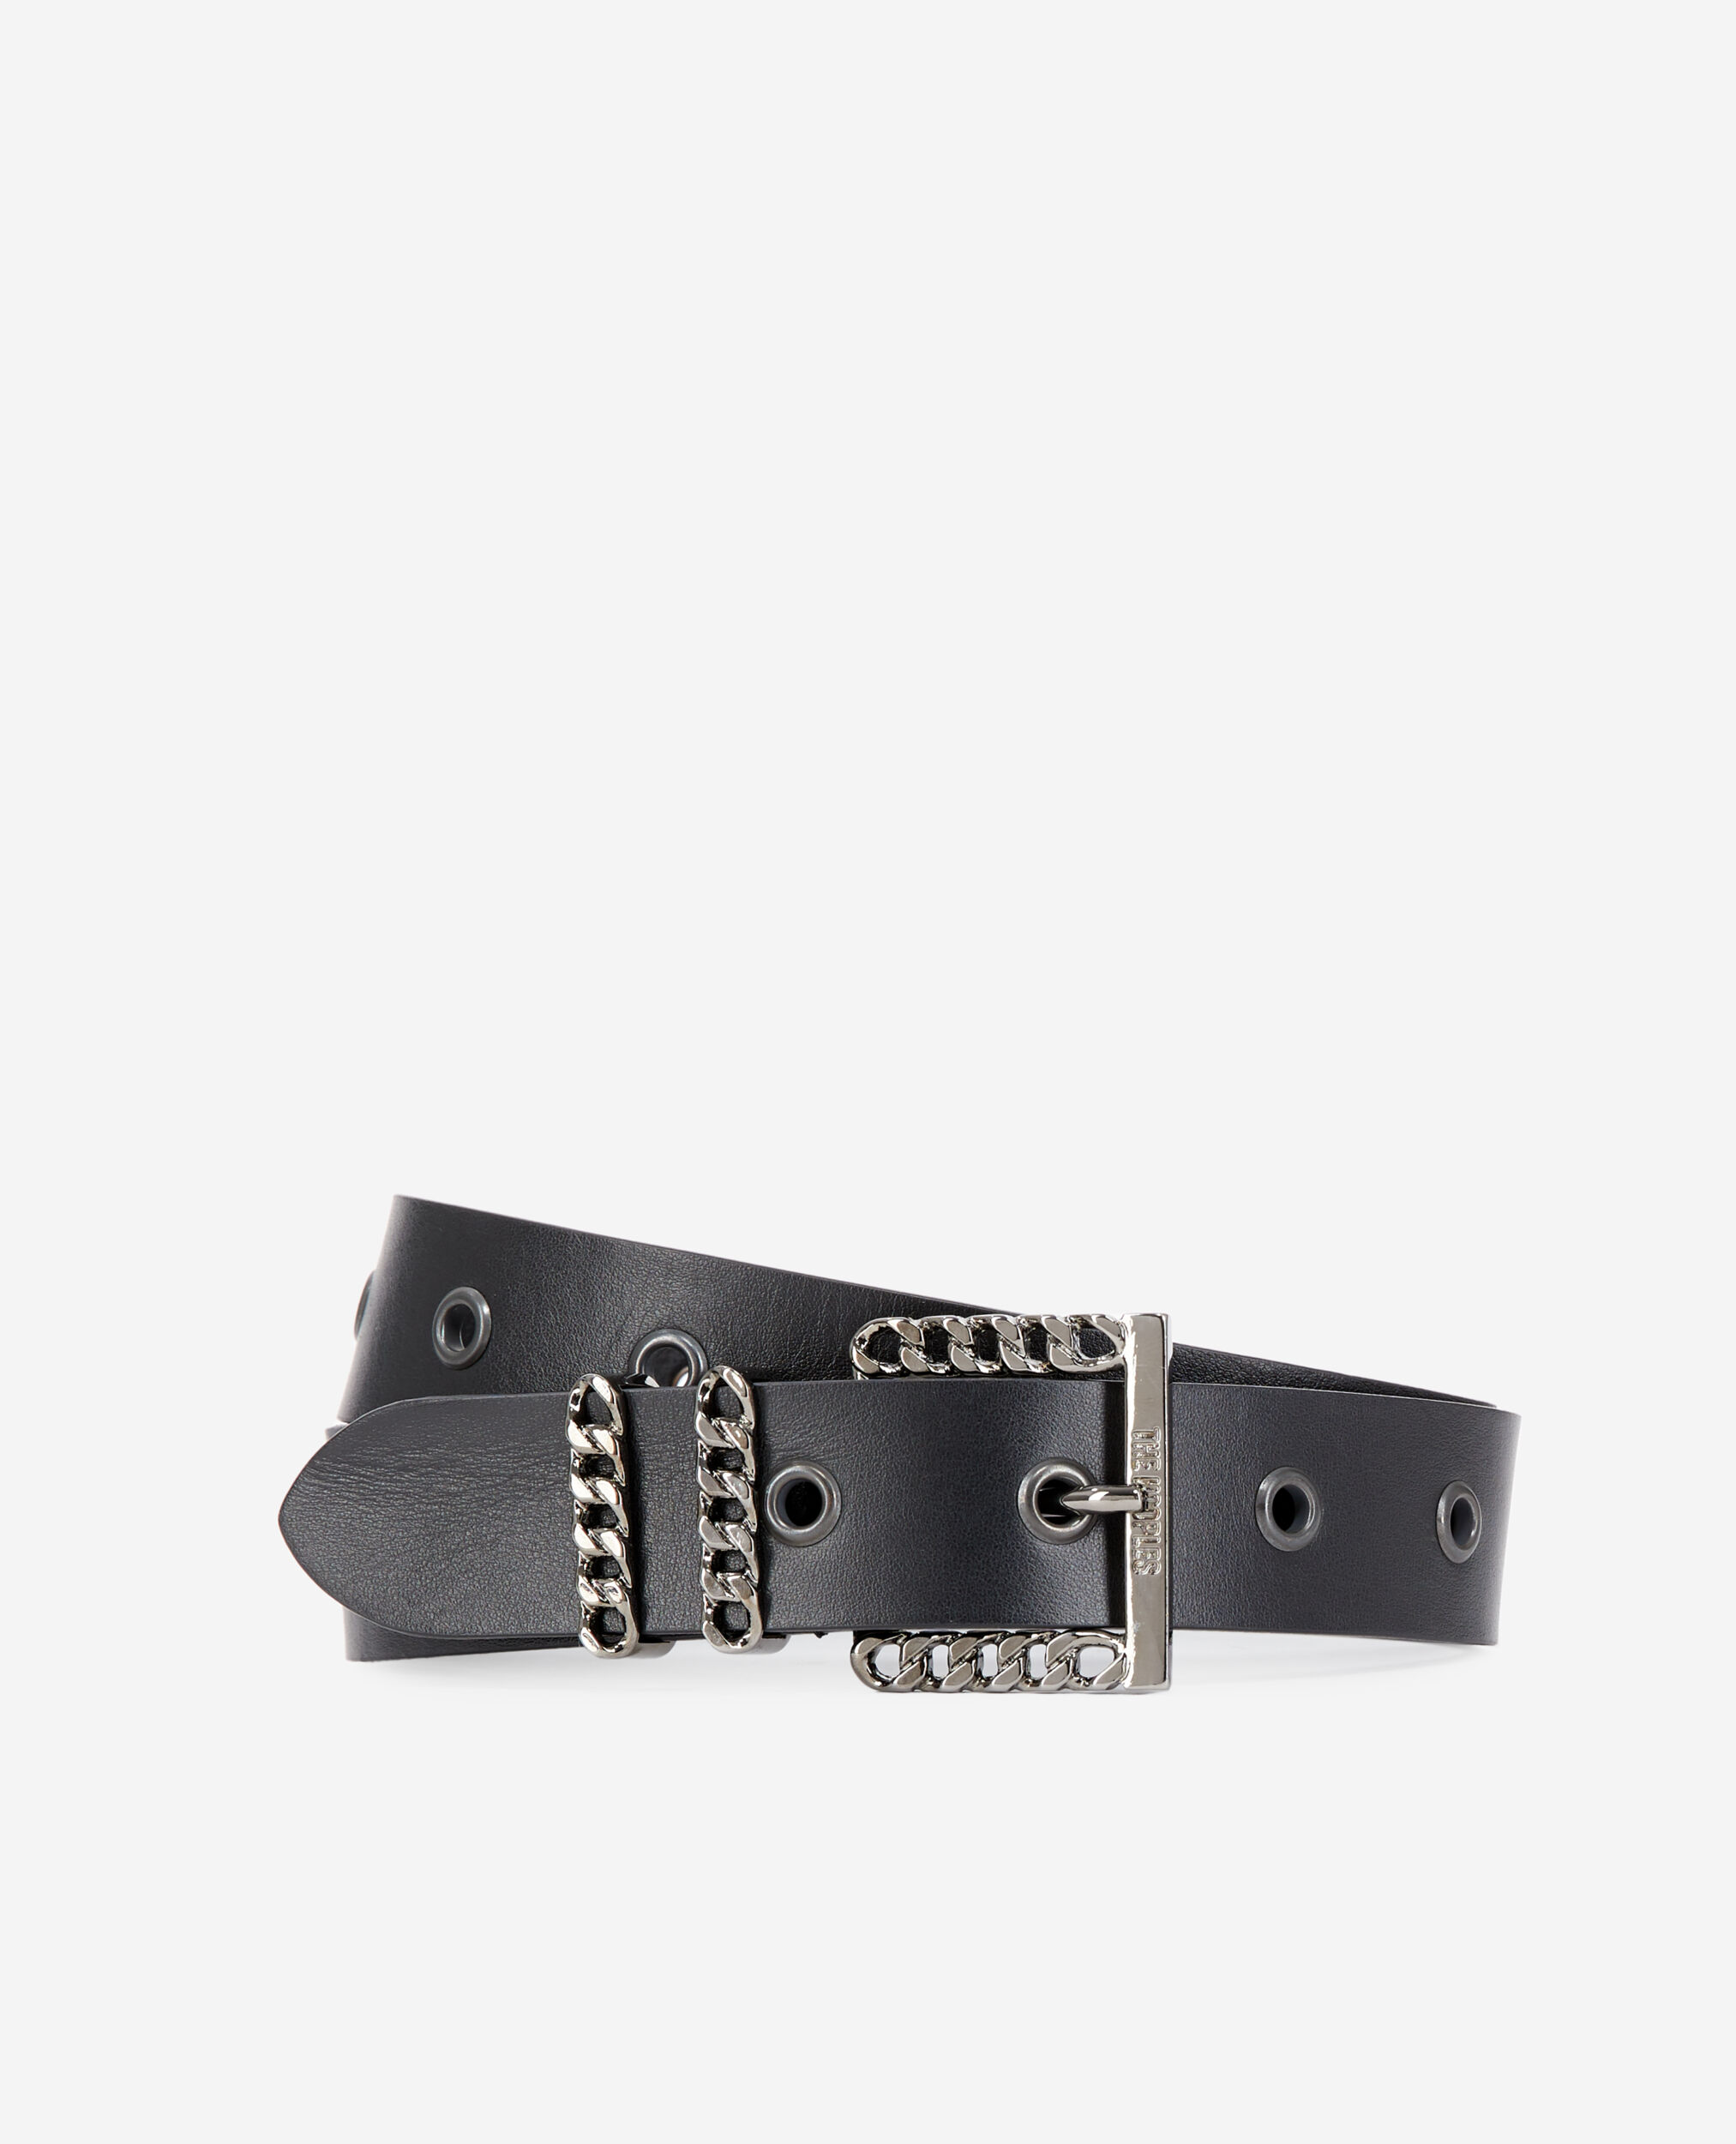 Cinturón piel negro hebilla cadena, BLACK, hi-res image number null